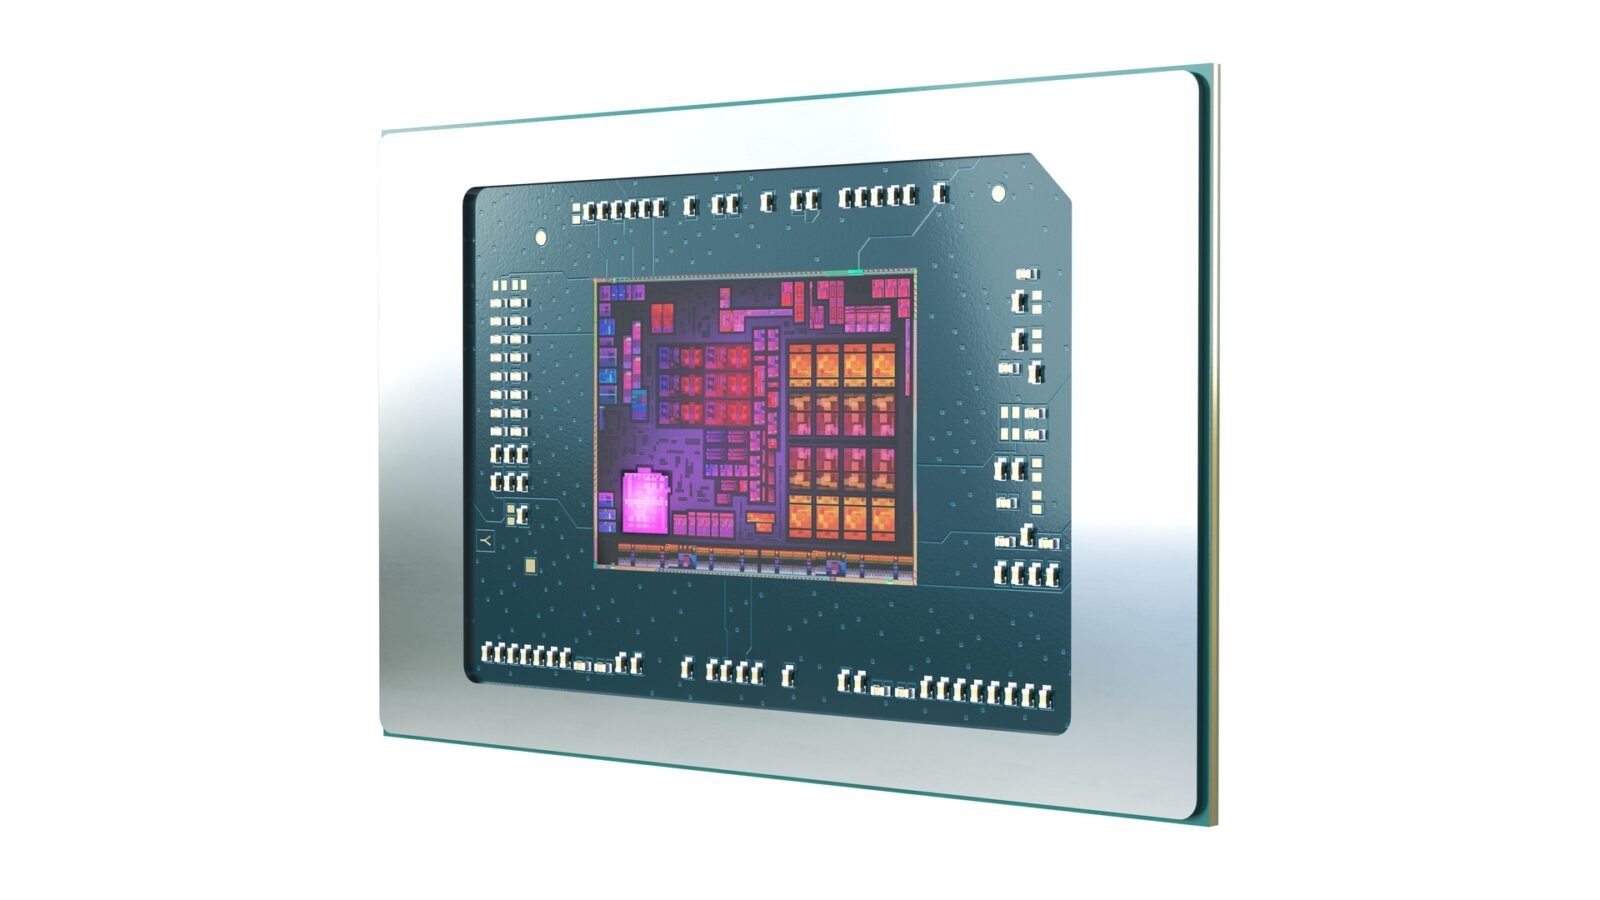 AMD Ryzen 7 8700G